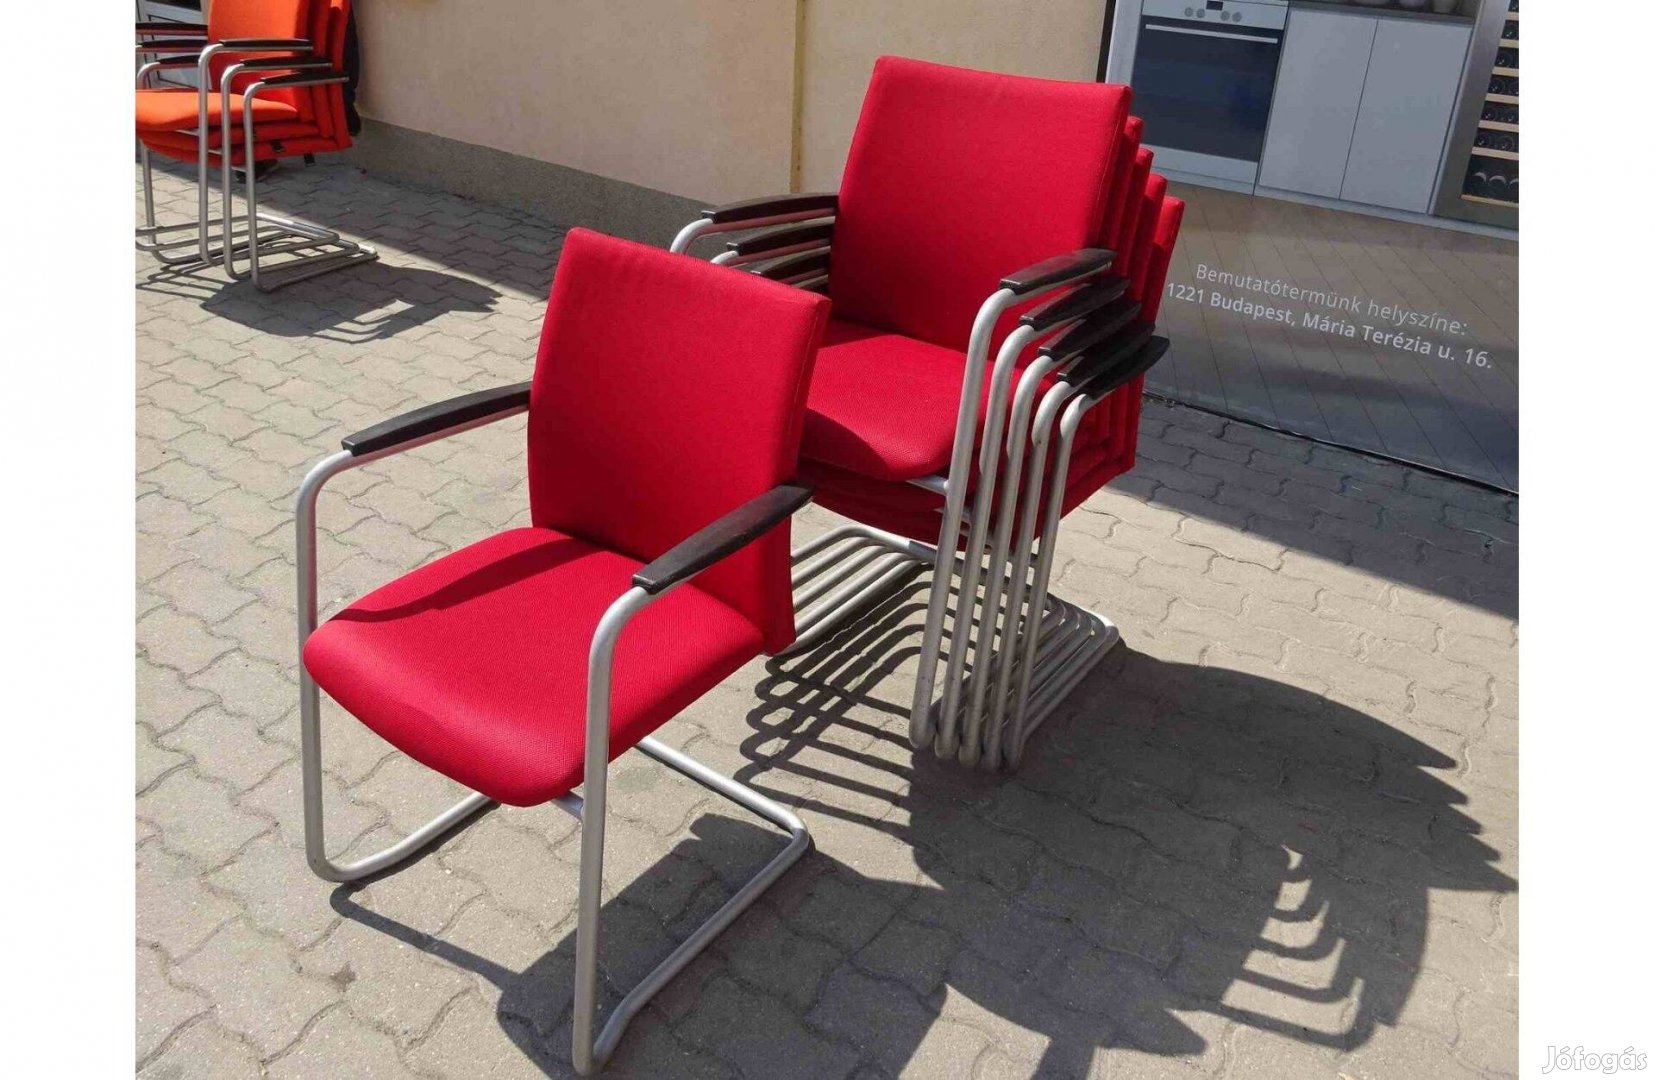 Tárgyalószék, konferencia szék, Haworth márka, piros színű, használt